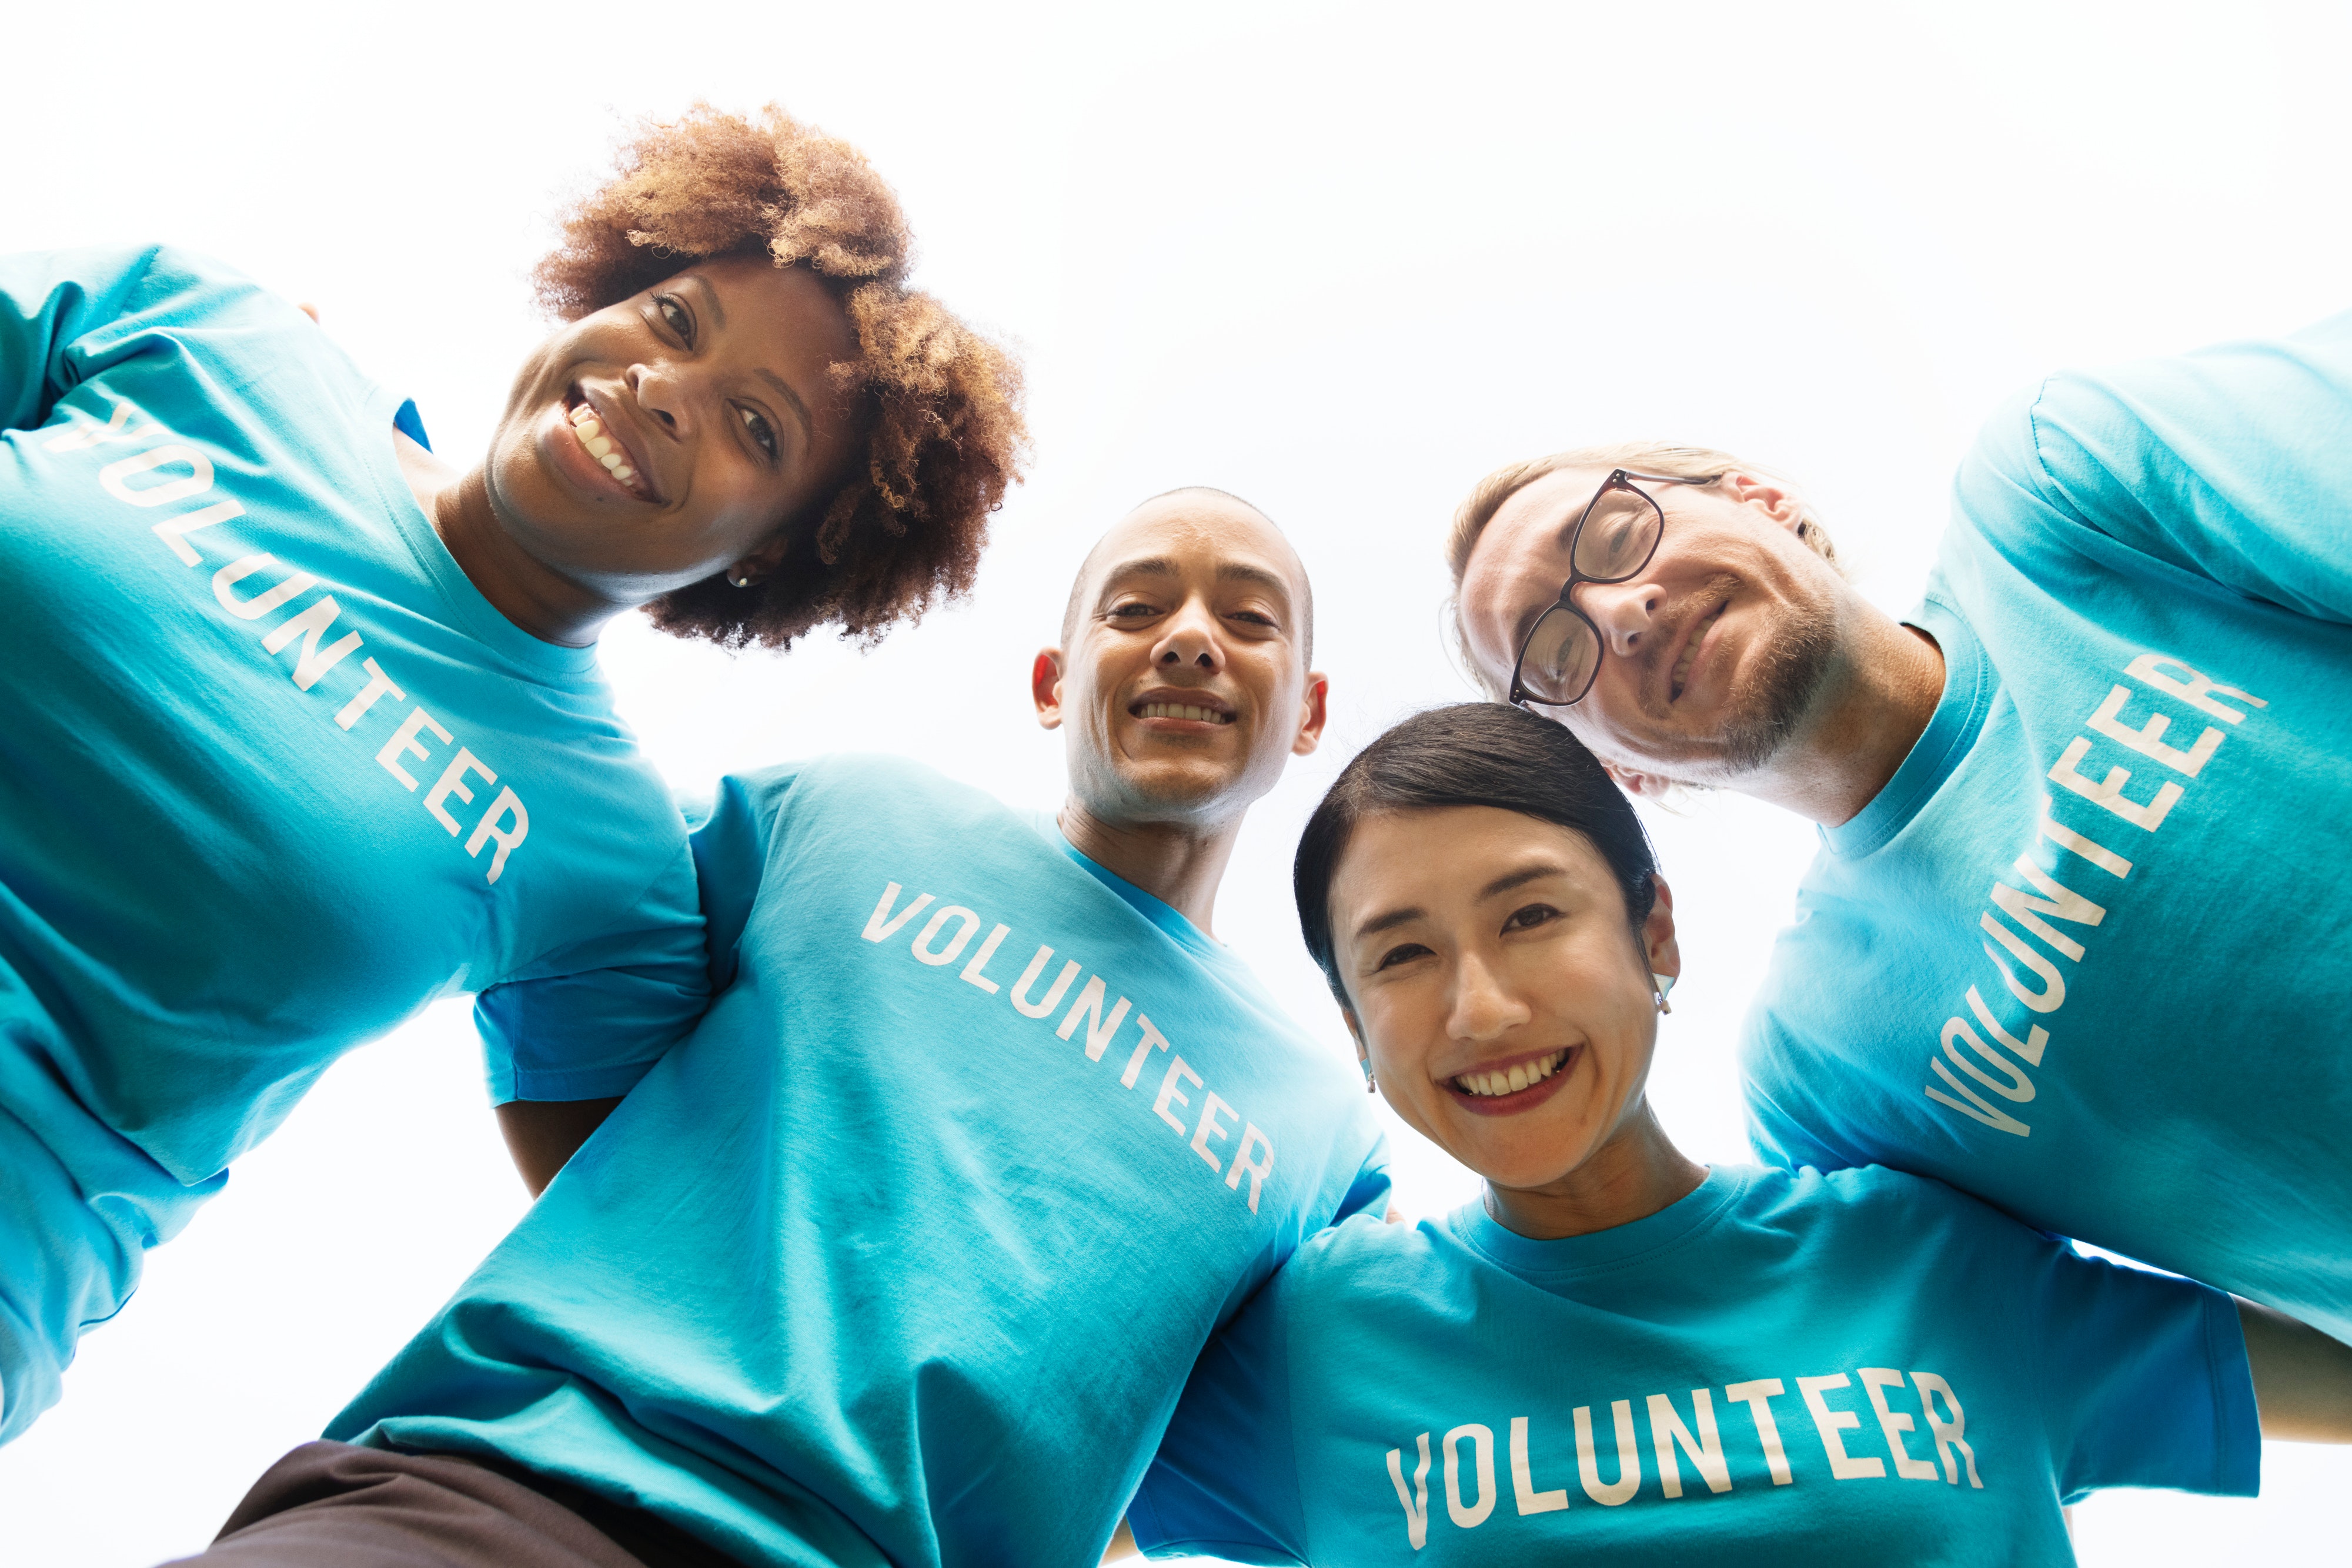 Four smiling people wearing blue volunteer t-shirts